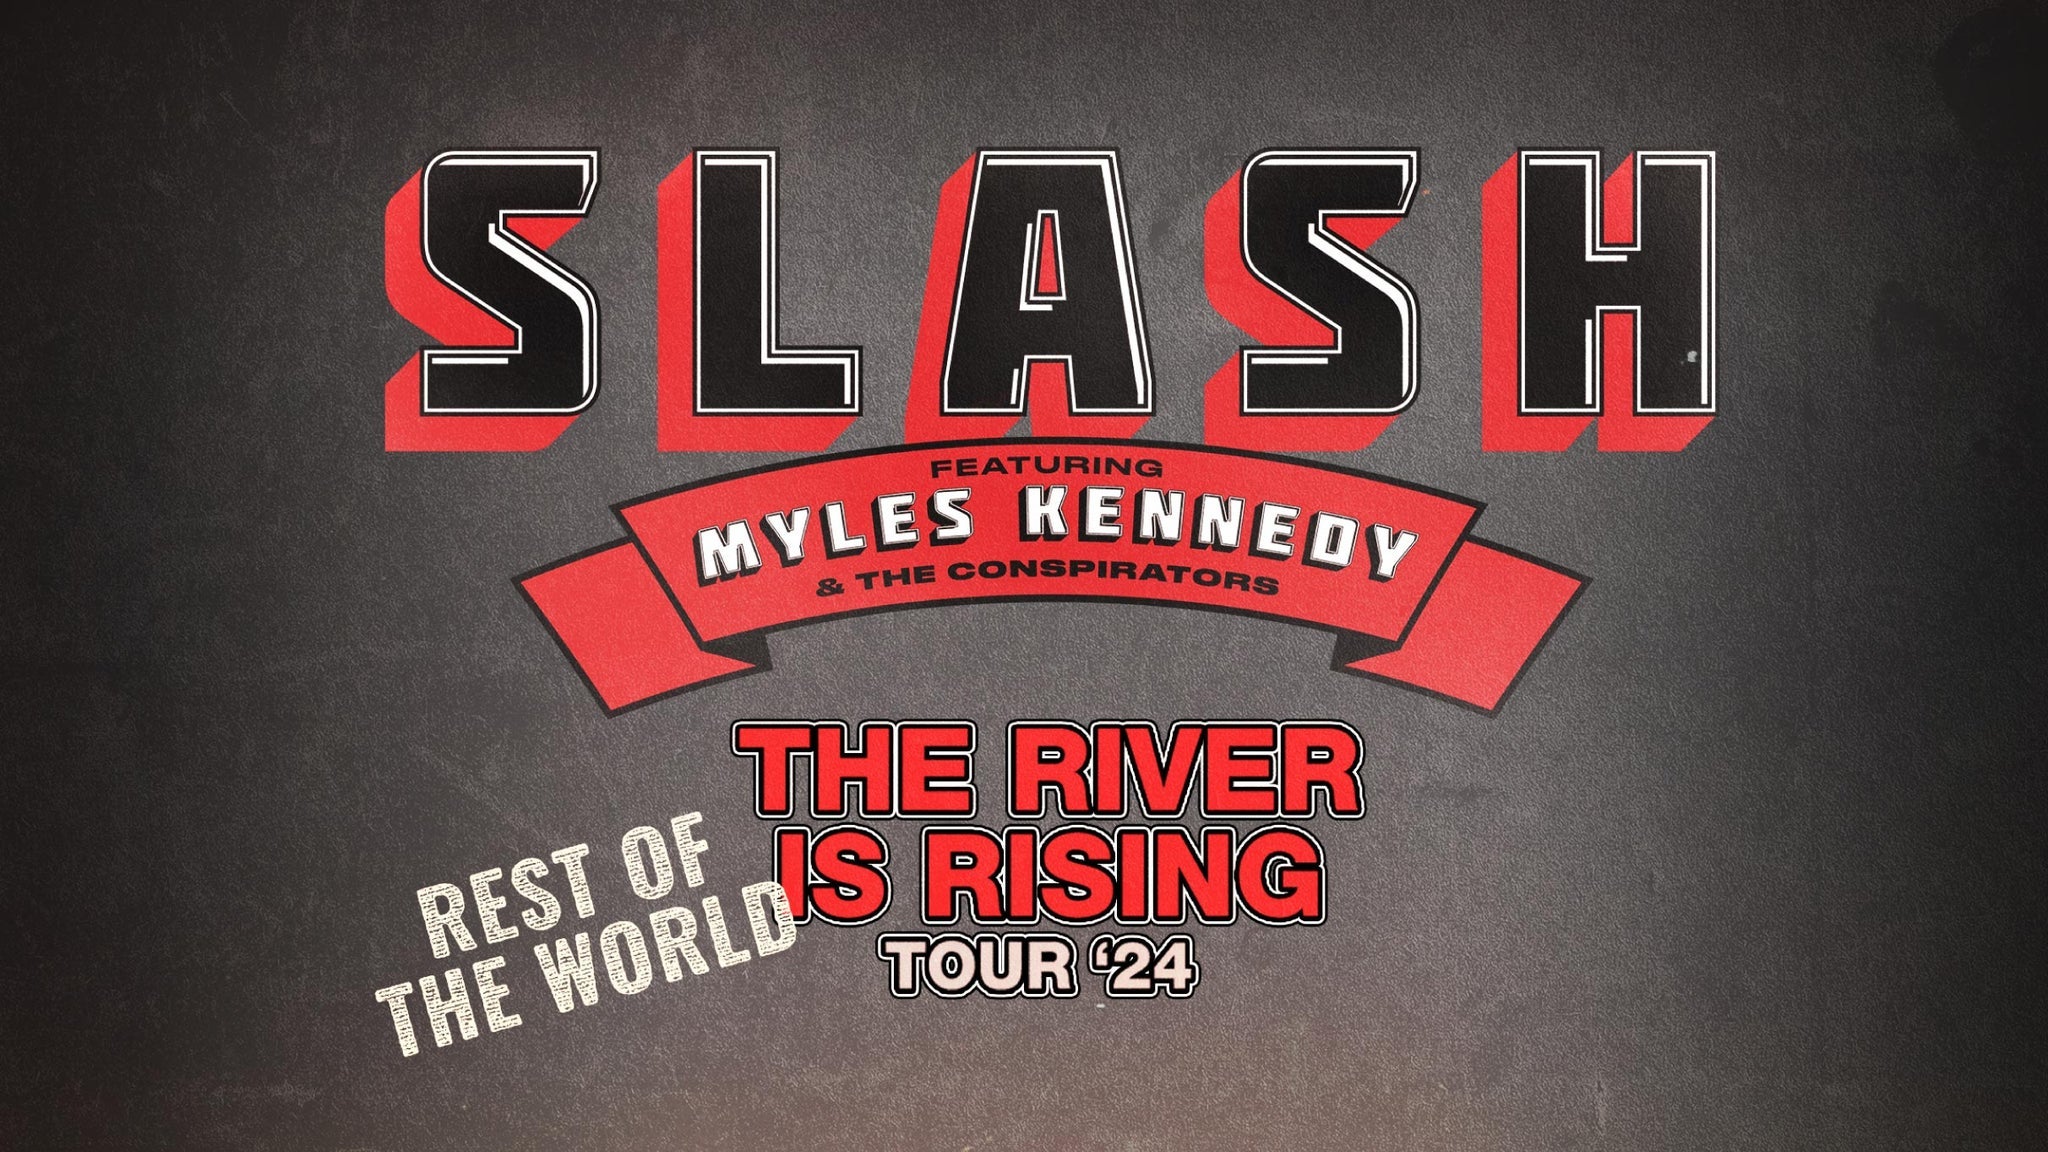 Slash Announces Spring U.S. Tour – Digital Tour Bus